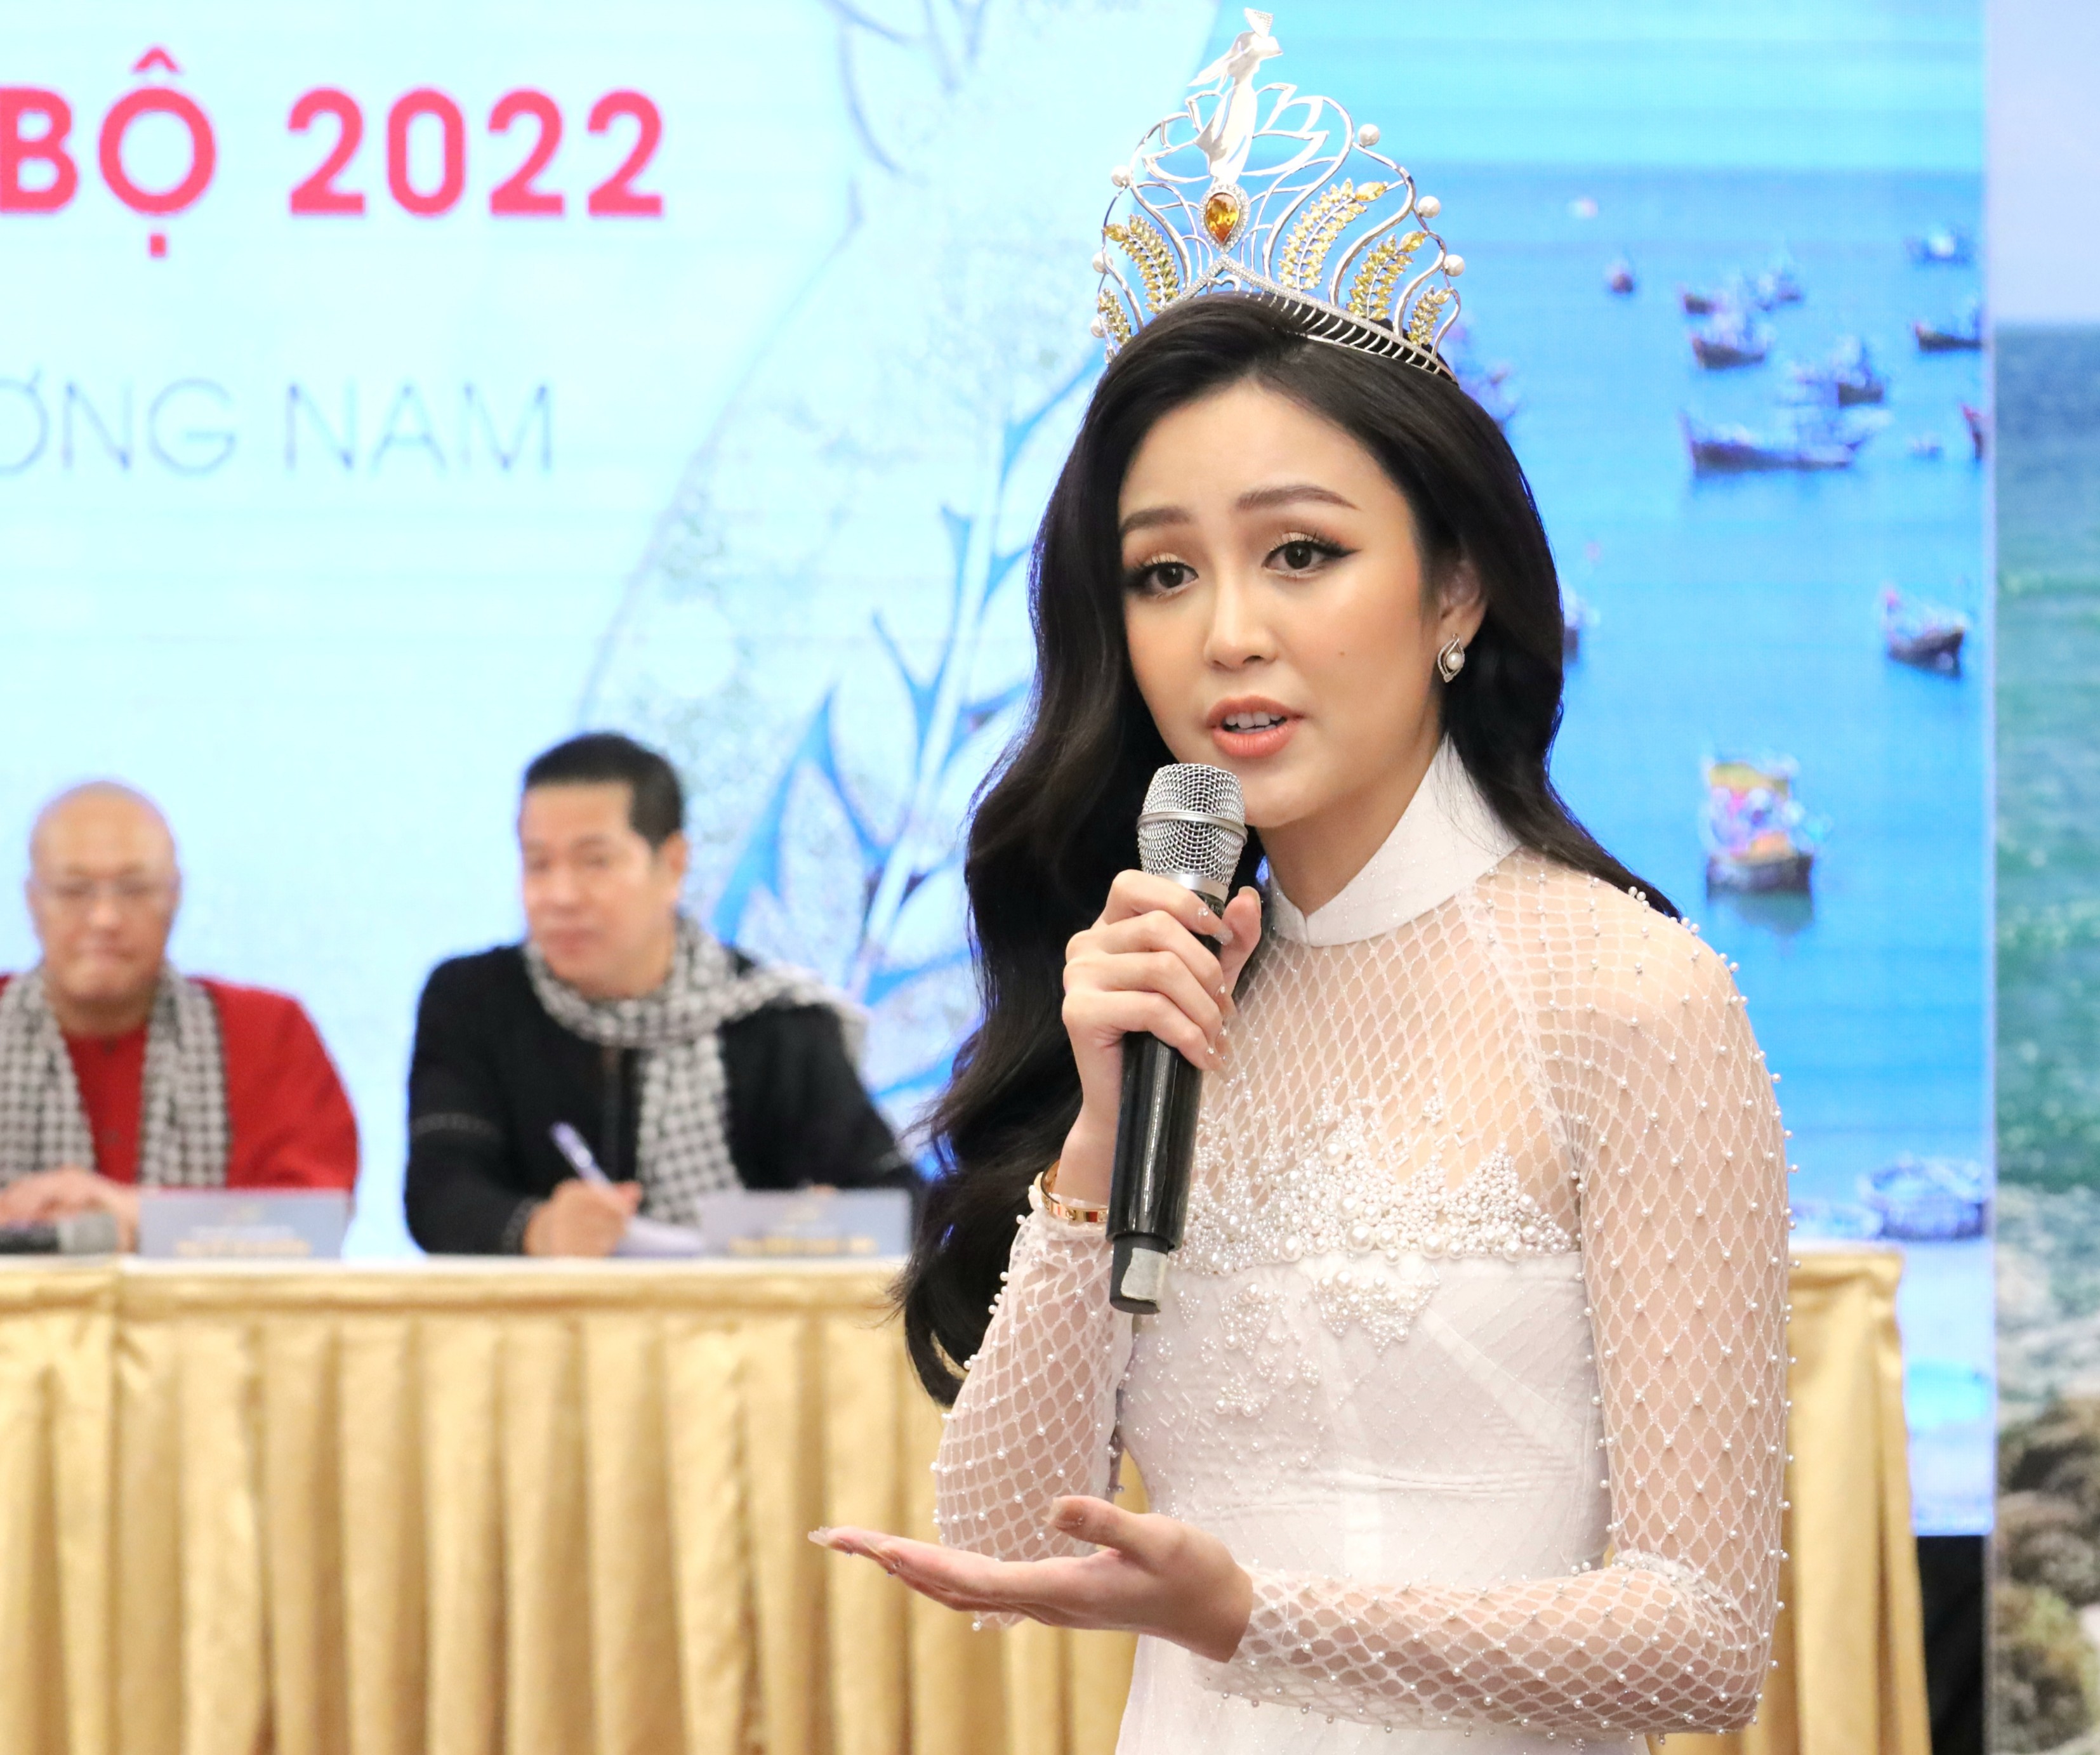 Hoa khôi Nguyễn Thị Hải Yến - Hoa khôi Nam Bộ 2017 phát biểu tại buổi giới thiệu cuộc thi Hoa khôi Nam bộ 2022.